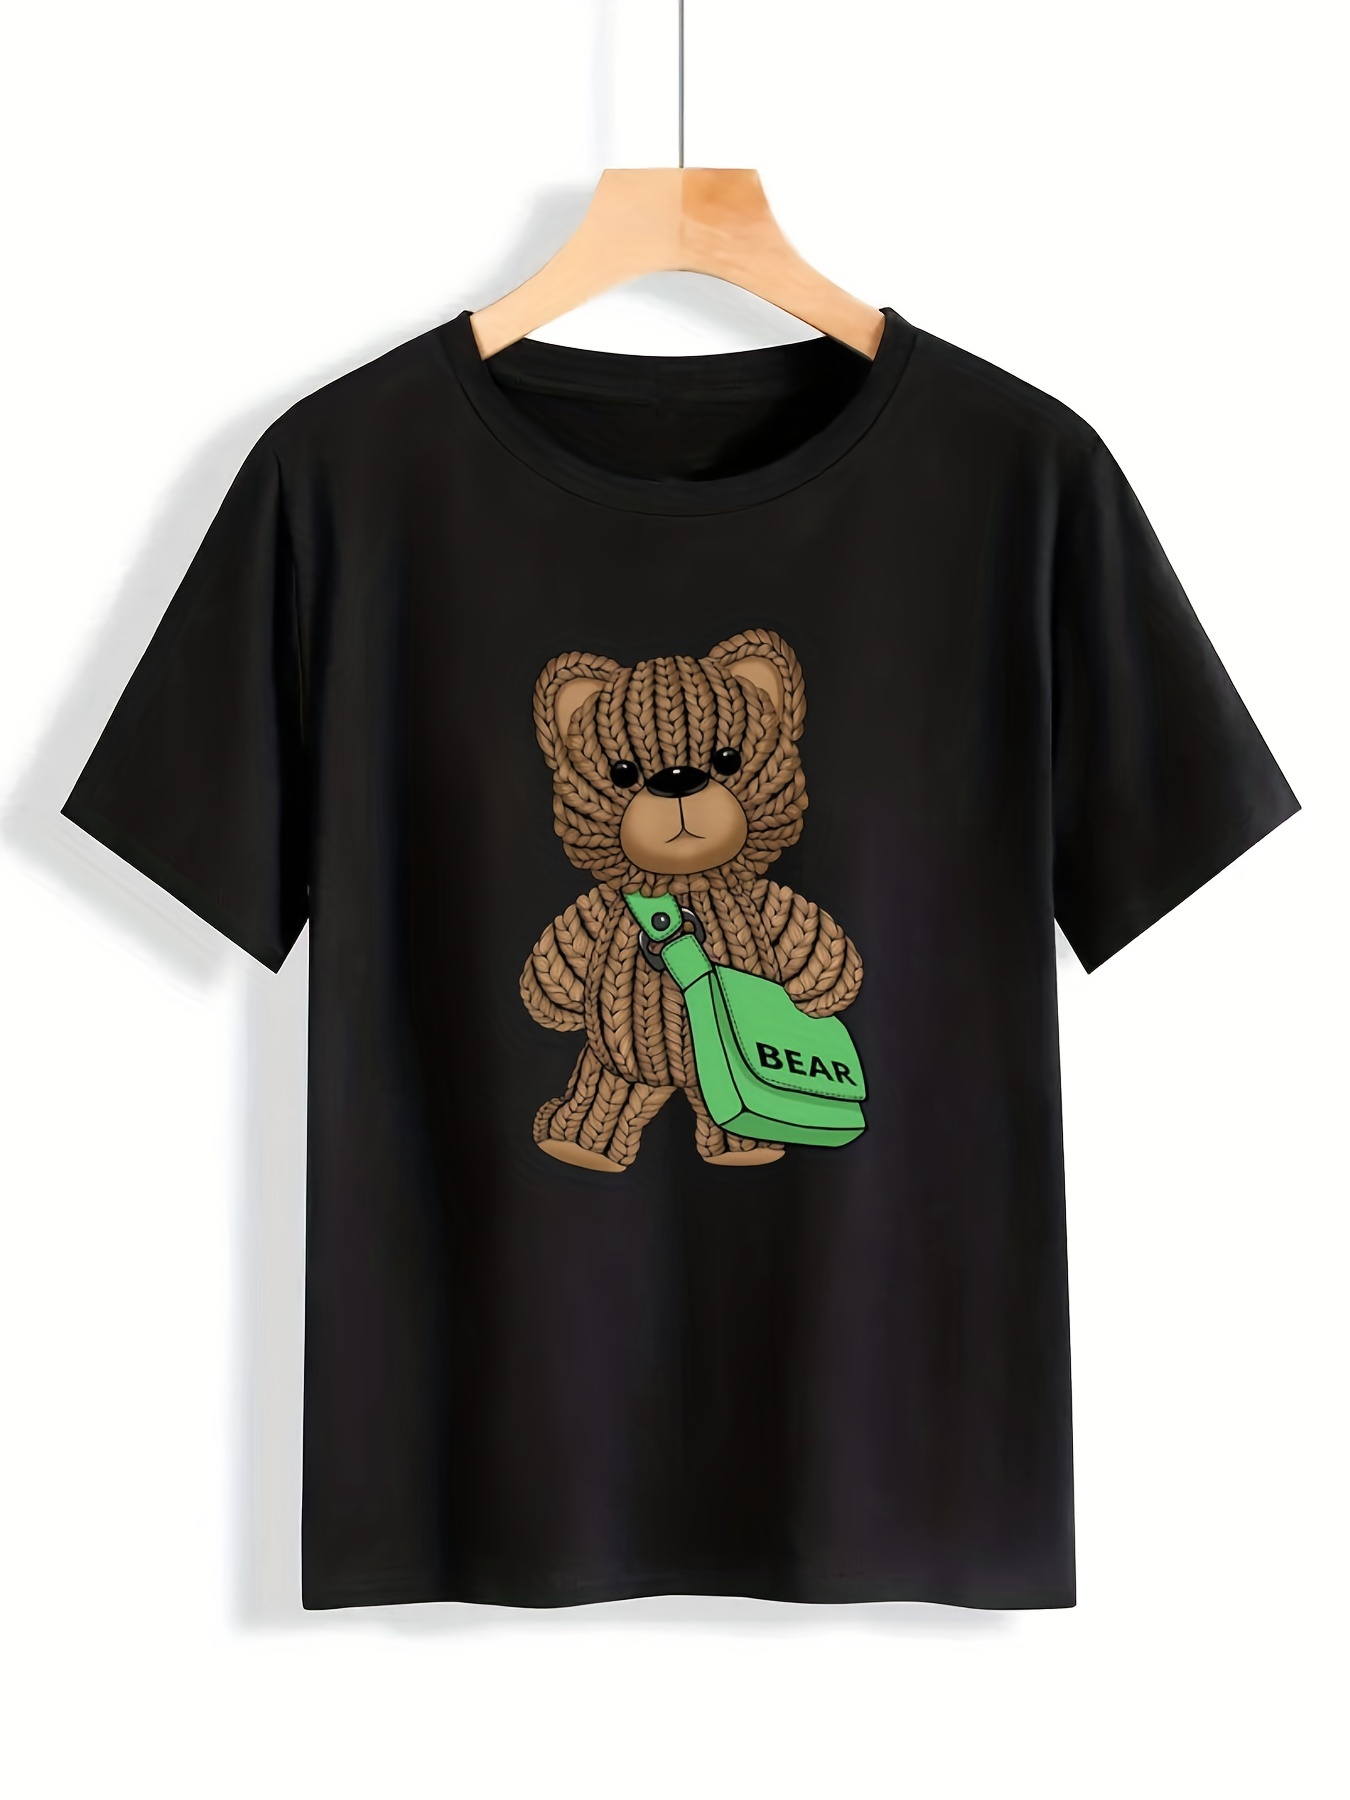 Lucky Bear Print Summer T shirt Cute Short Sleeve Crew Neck - Temu